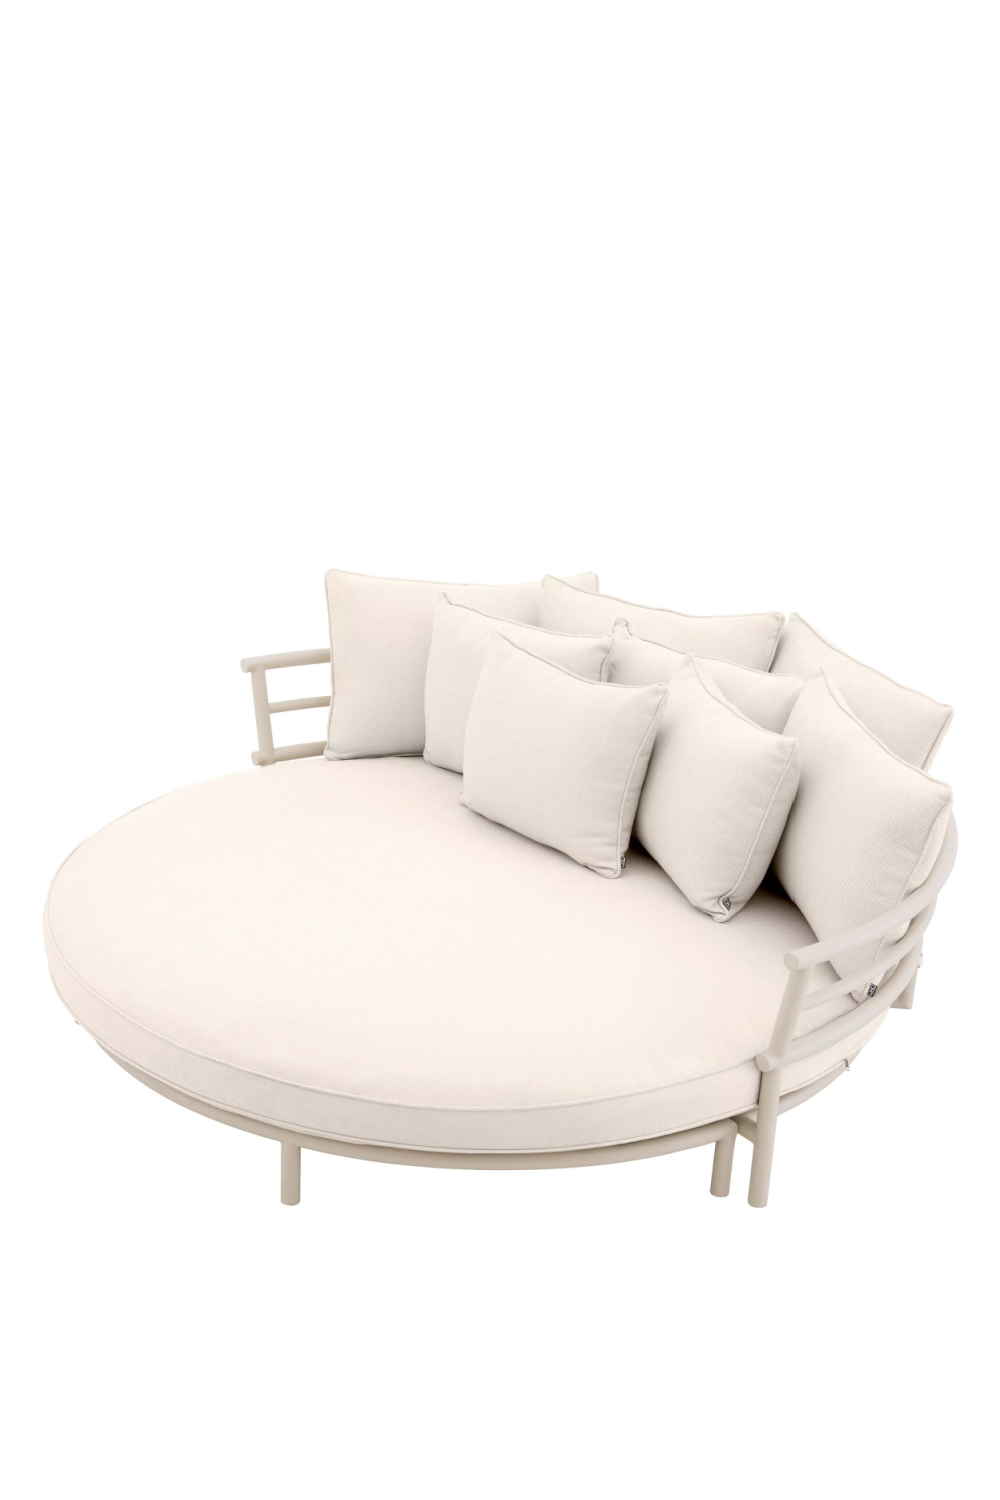 White Round Outdoor Sofa | Eichholtz Laguno | Oroa.com